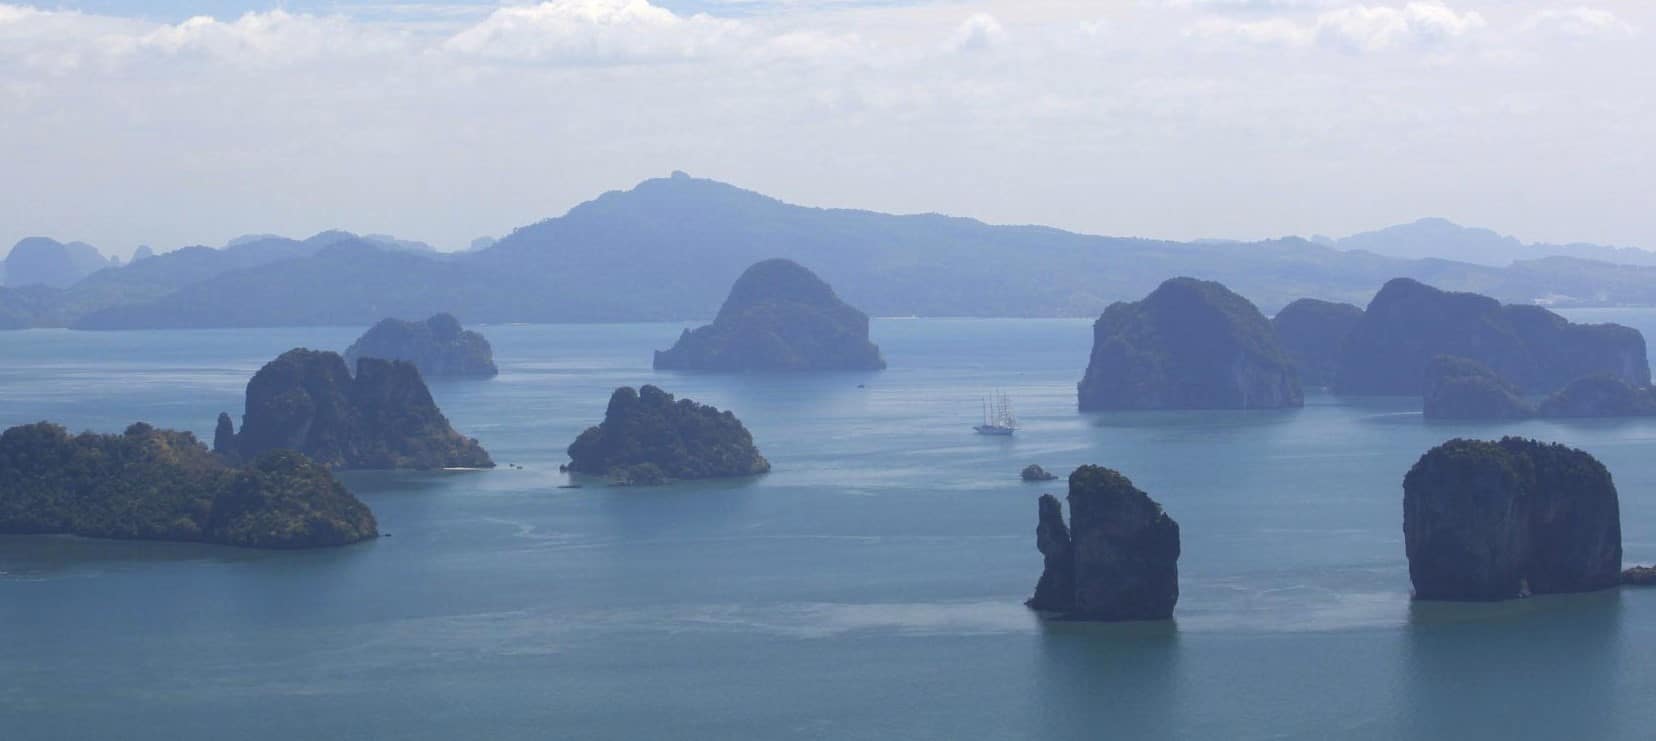 Iles de l'archipel de Koh Hong au large de Krabi